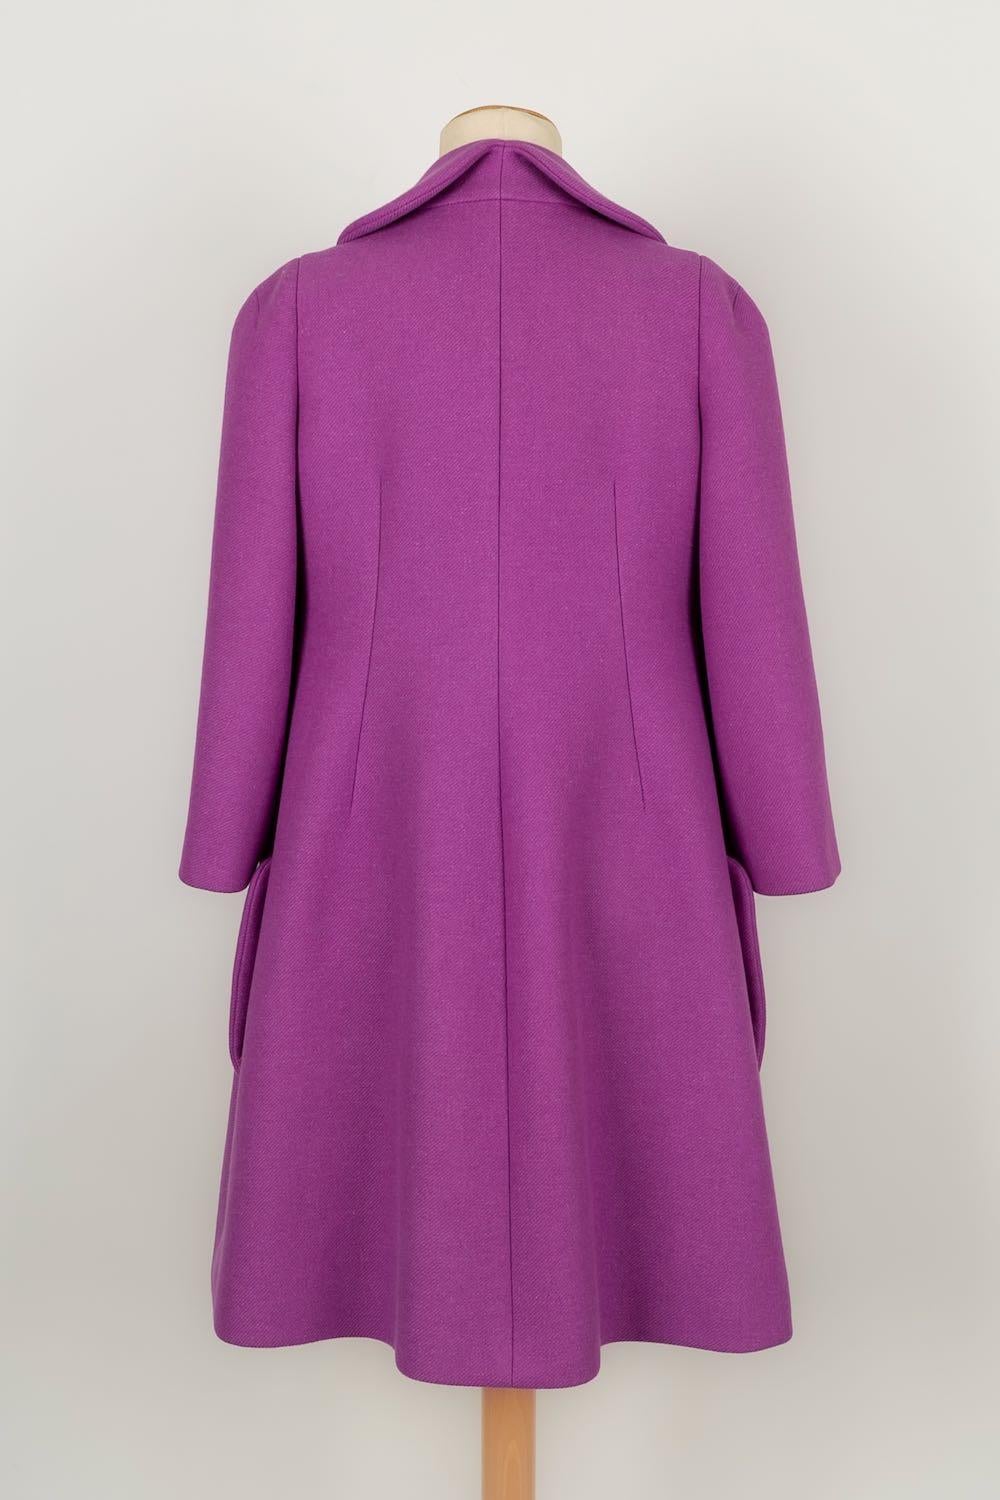 Purple Sonia Rykiel Wool Coat, Size 40FR